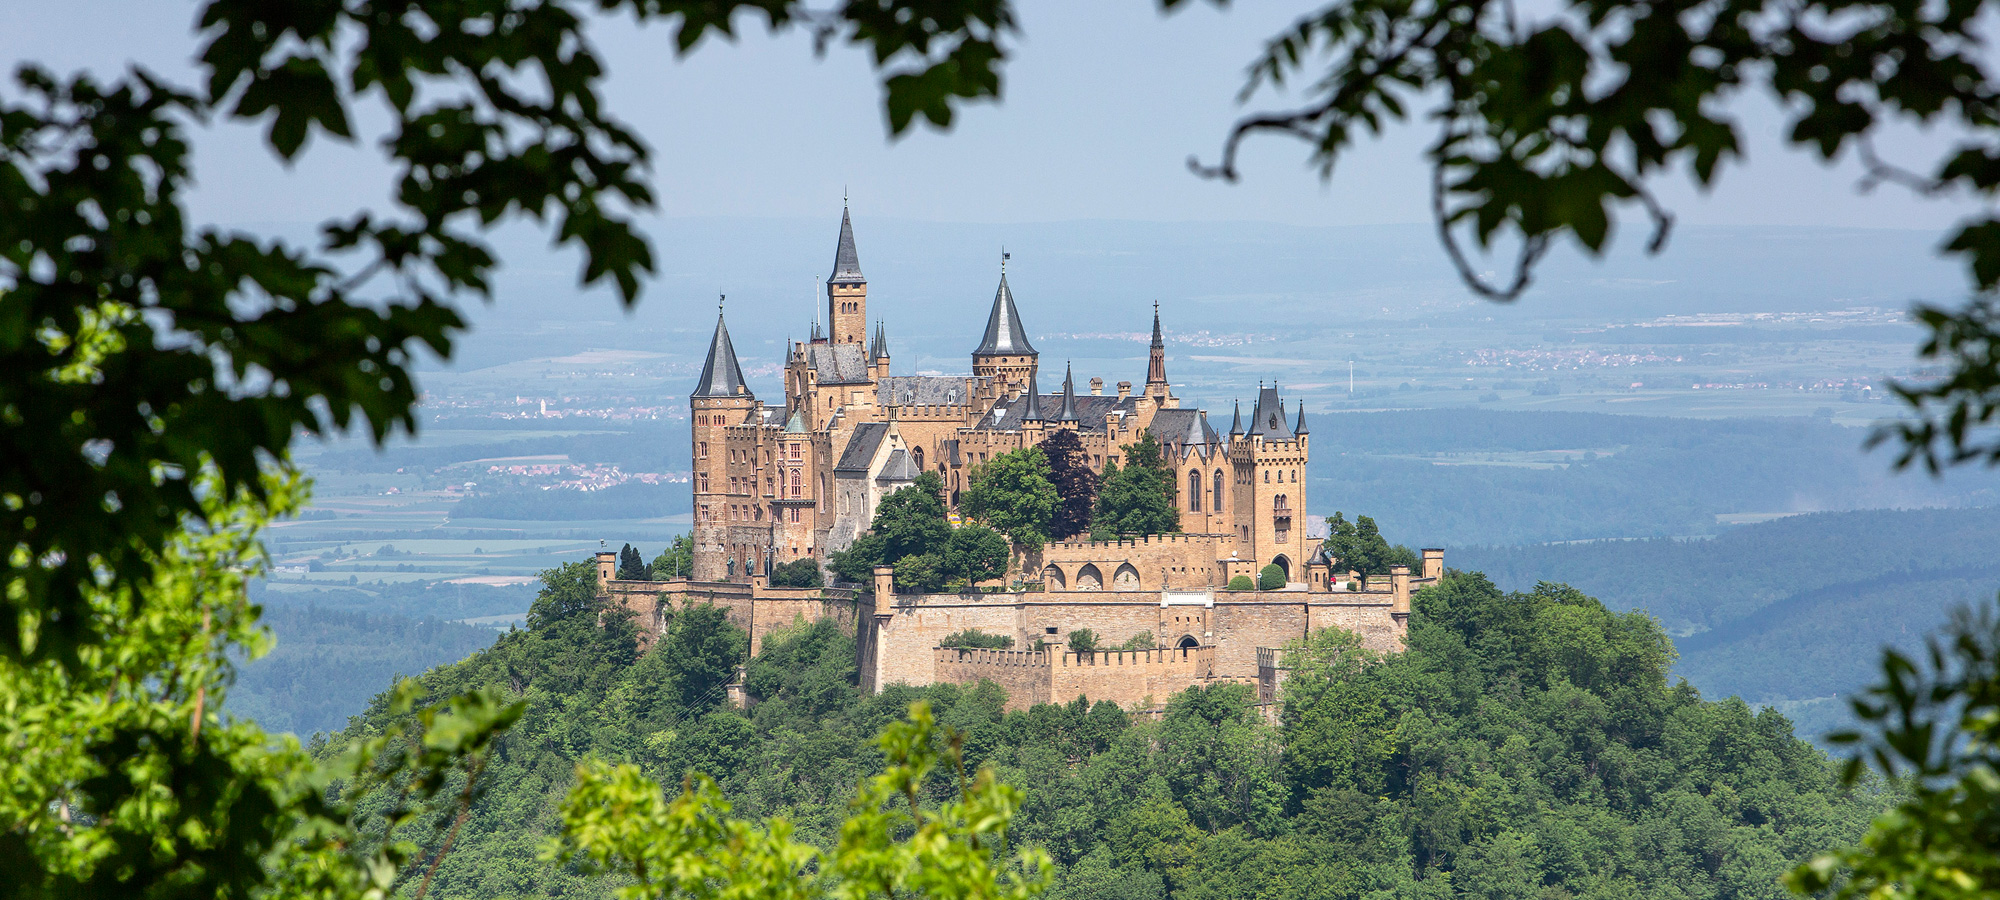 Burg Hohenzollern liegt am Rande der Schwäbischen Alb. Im Hintergrund ist Bisingen bei Balingen zu sehen.